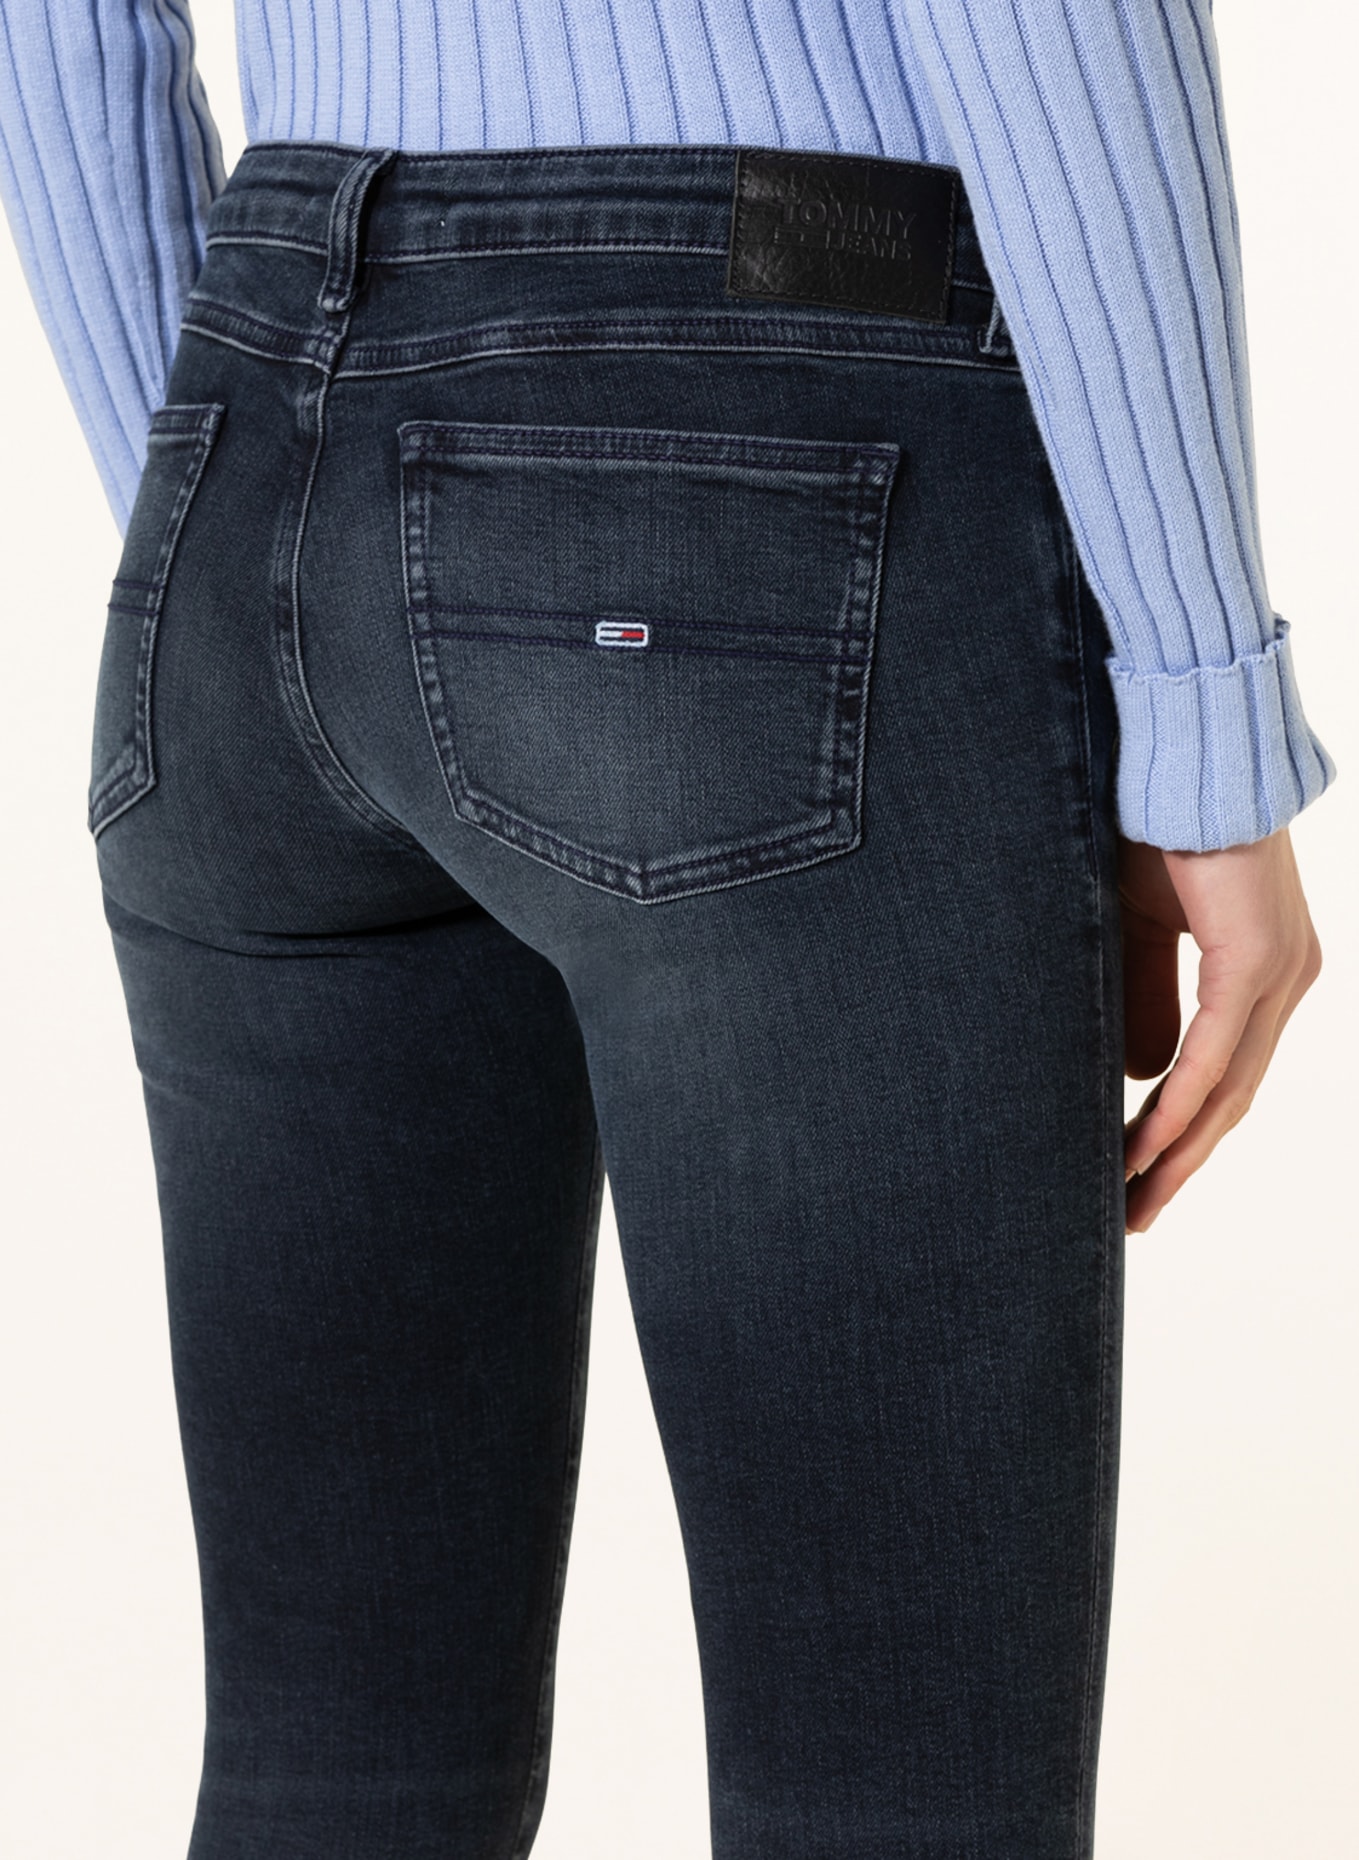 TOMMY JEANS Skinny Jeans SOPHIE, Farbe: 1BK Denim Dark (Bild 5)